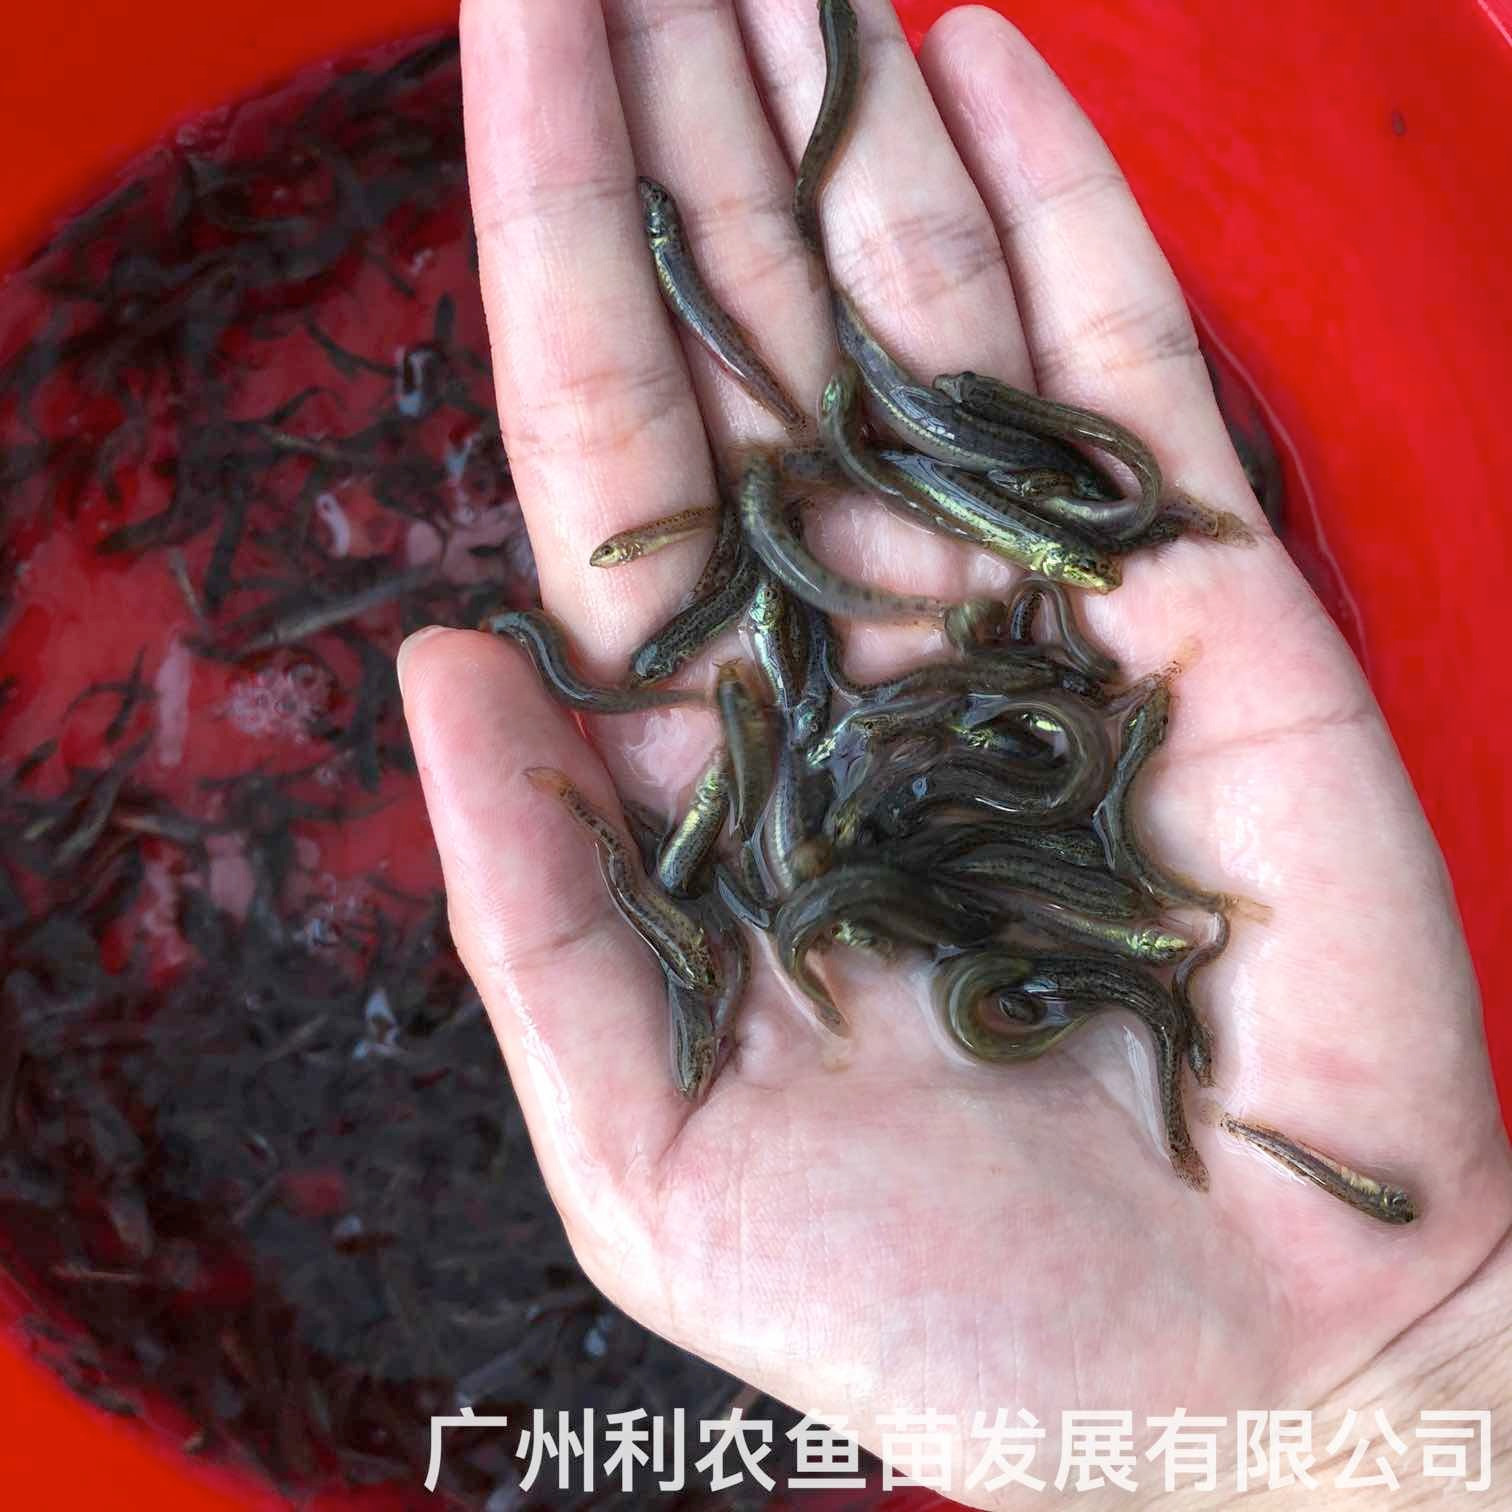 广西蒙山台湾泥鳅苗出售广西玉州泥鳅鱼苗批发